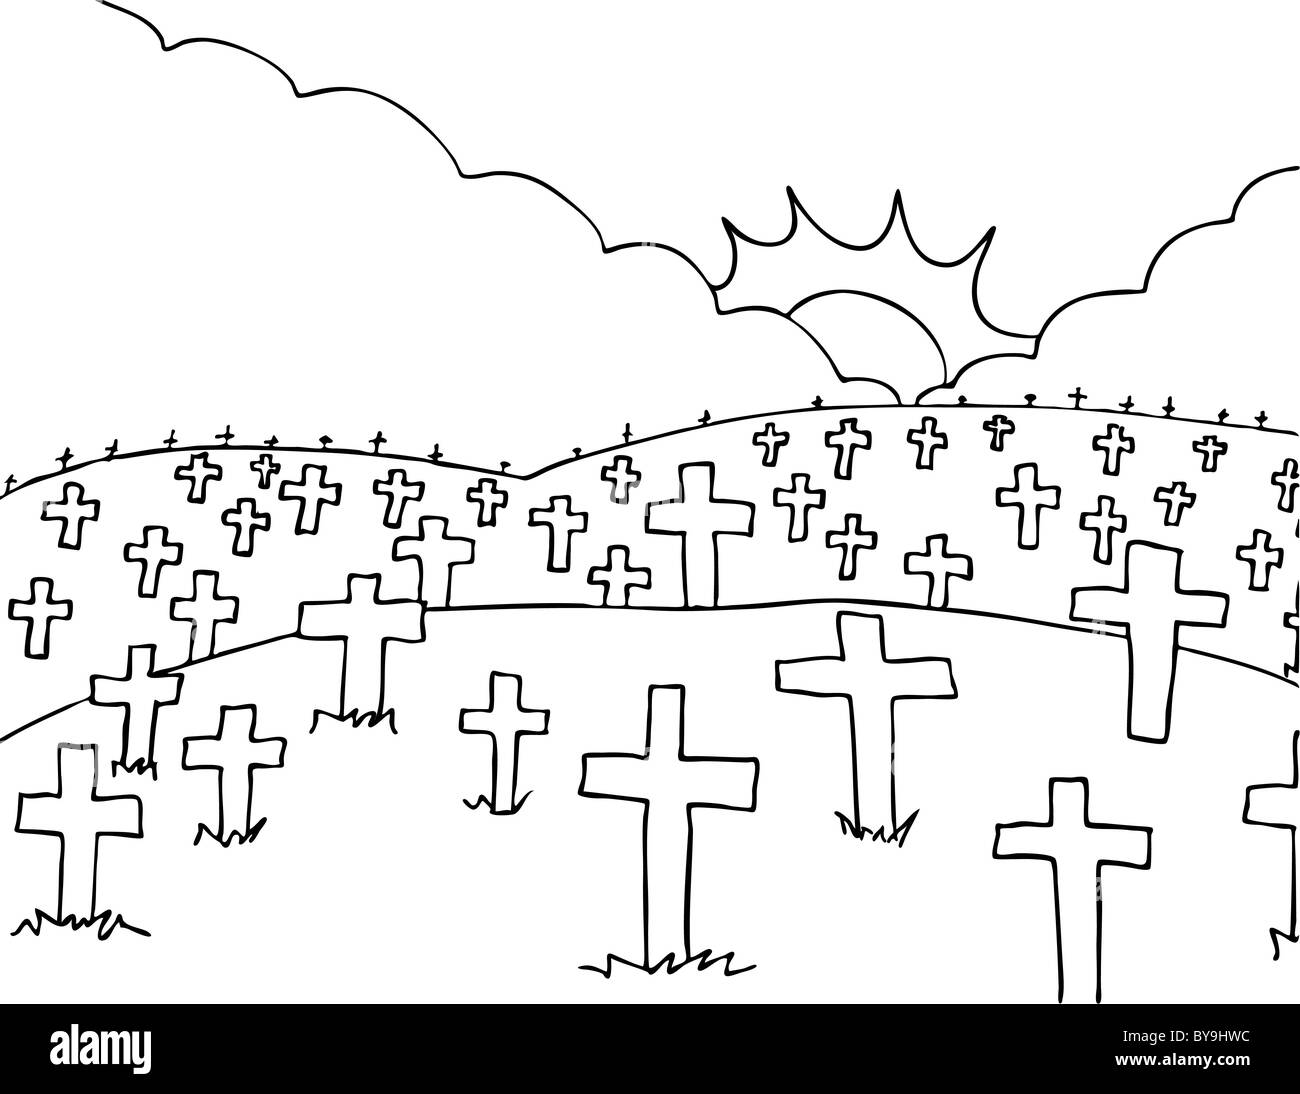 Frieden-Bild eines Friedhofs mit weißen kreuzen - schwarz / weiß-Version. Stockfoto